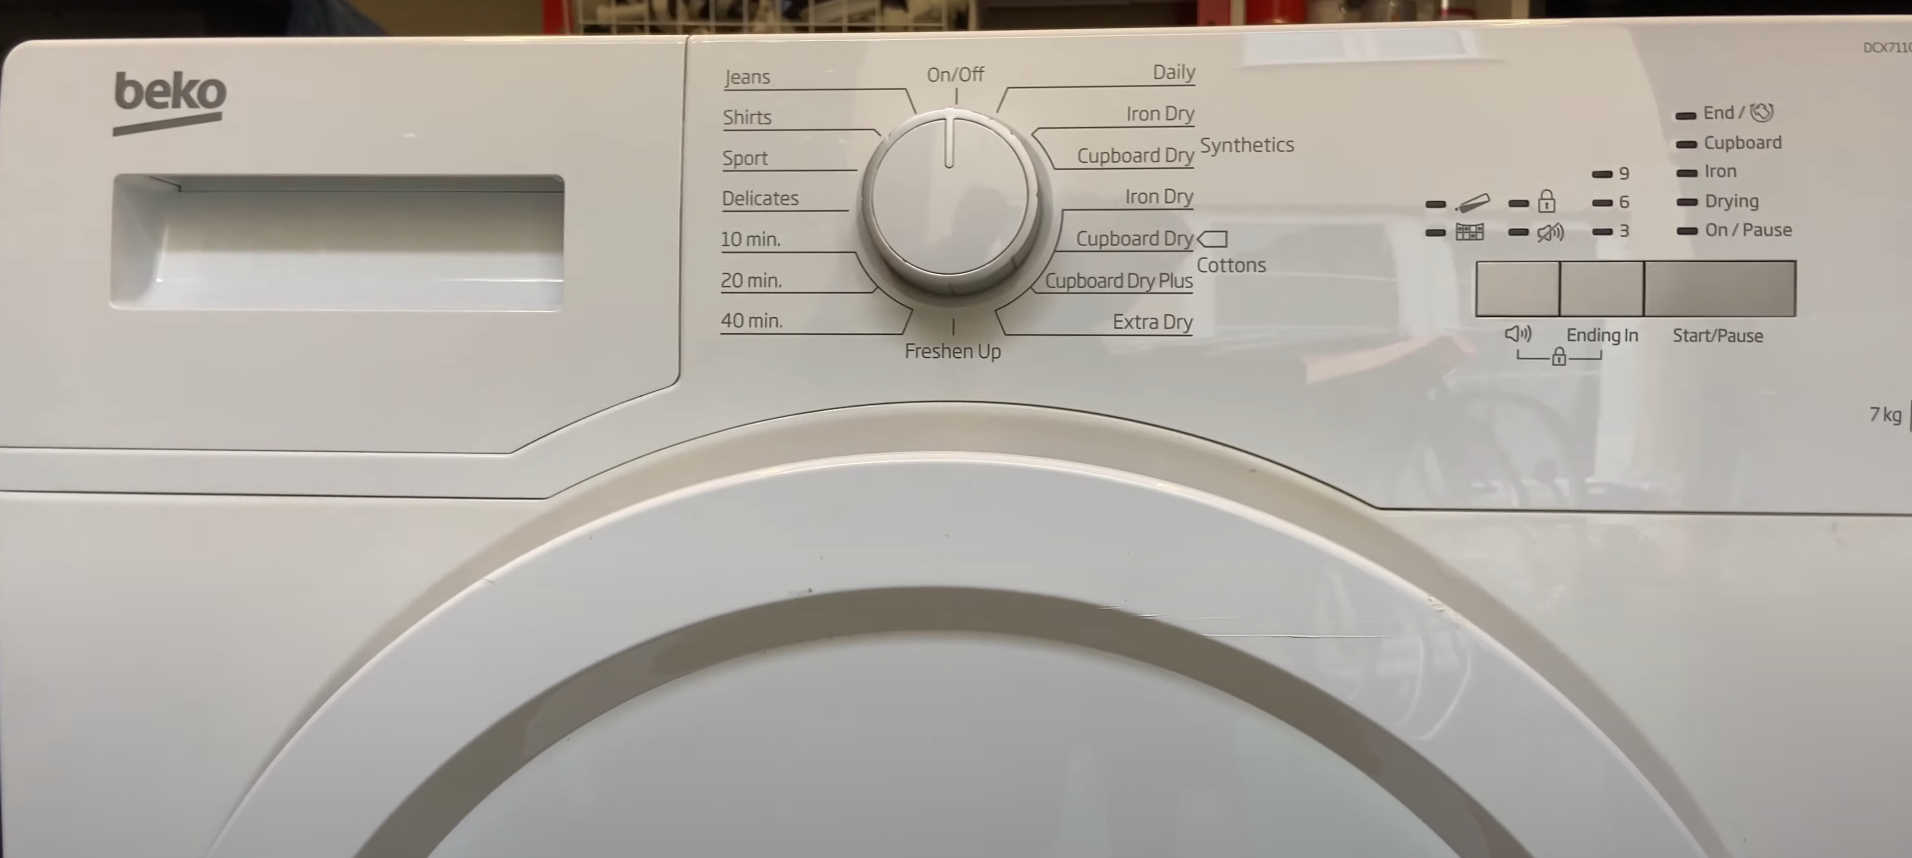 Beko Tumble Dryer Control Panel